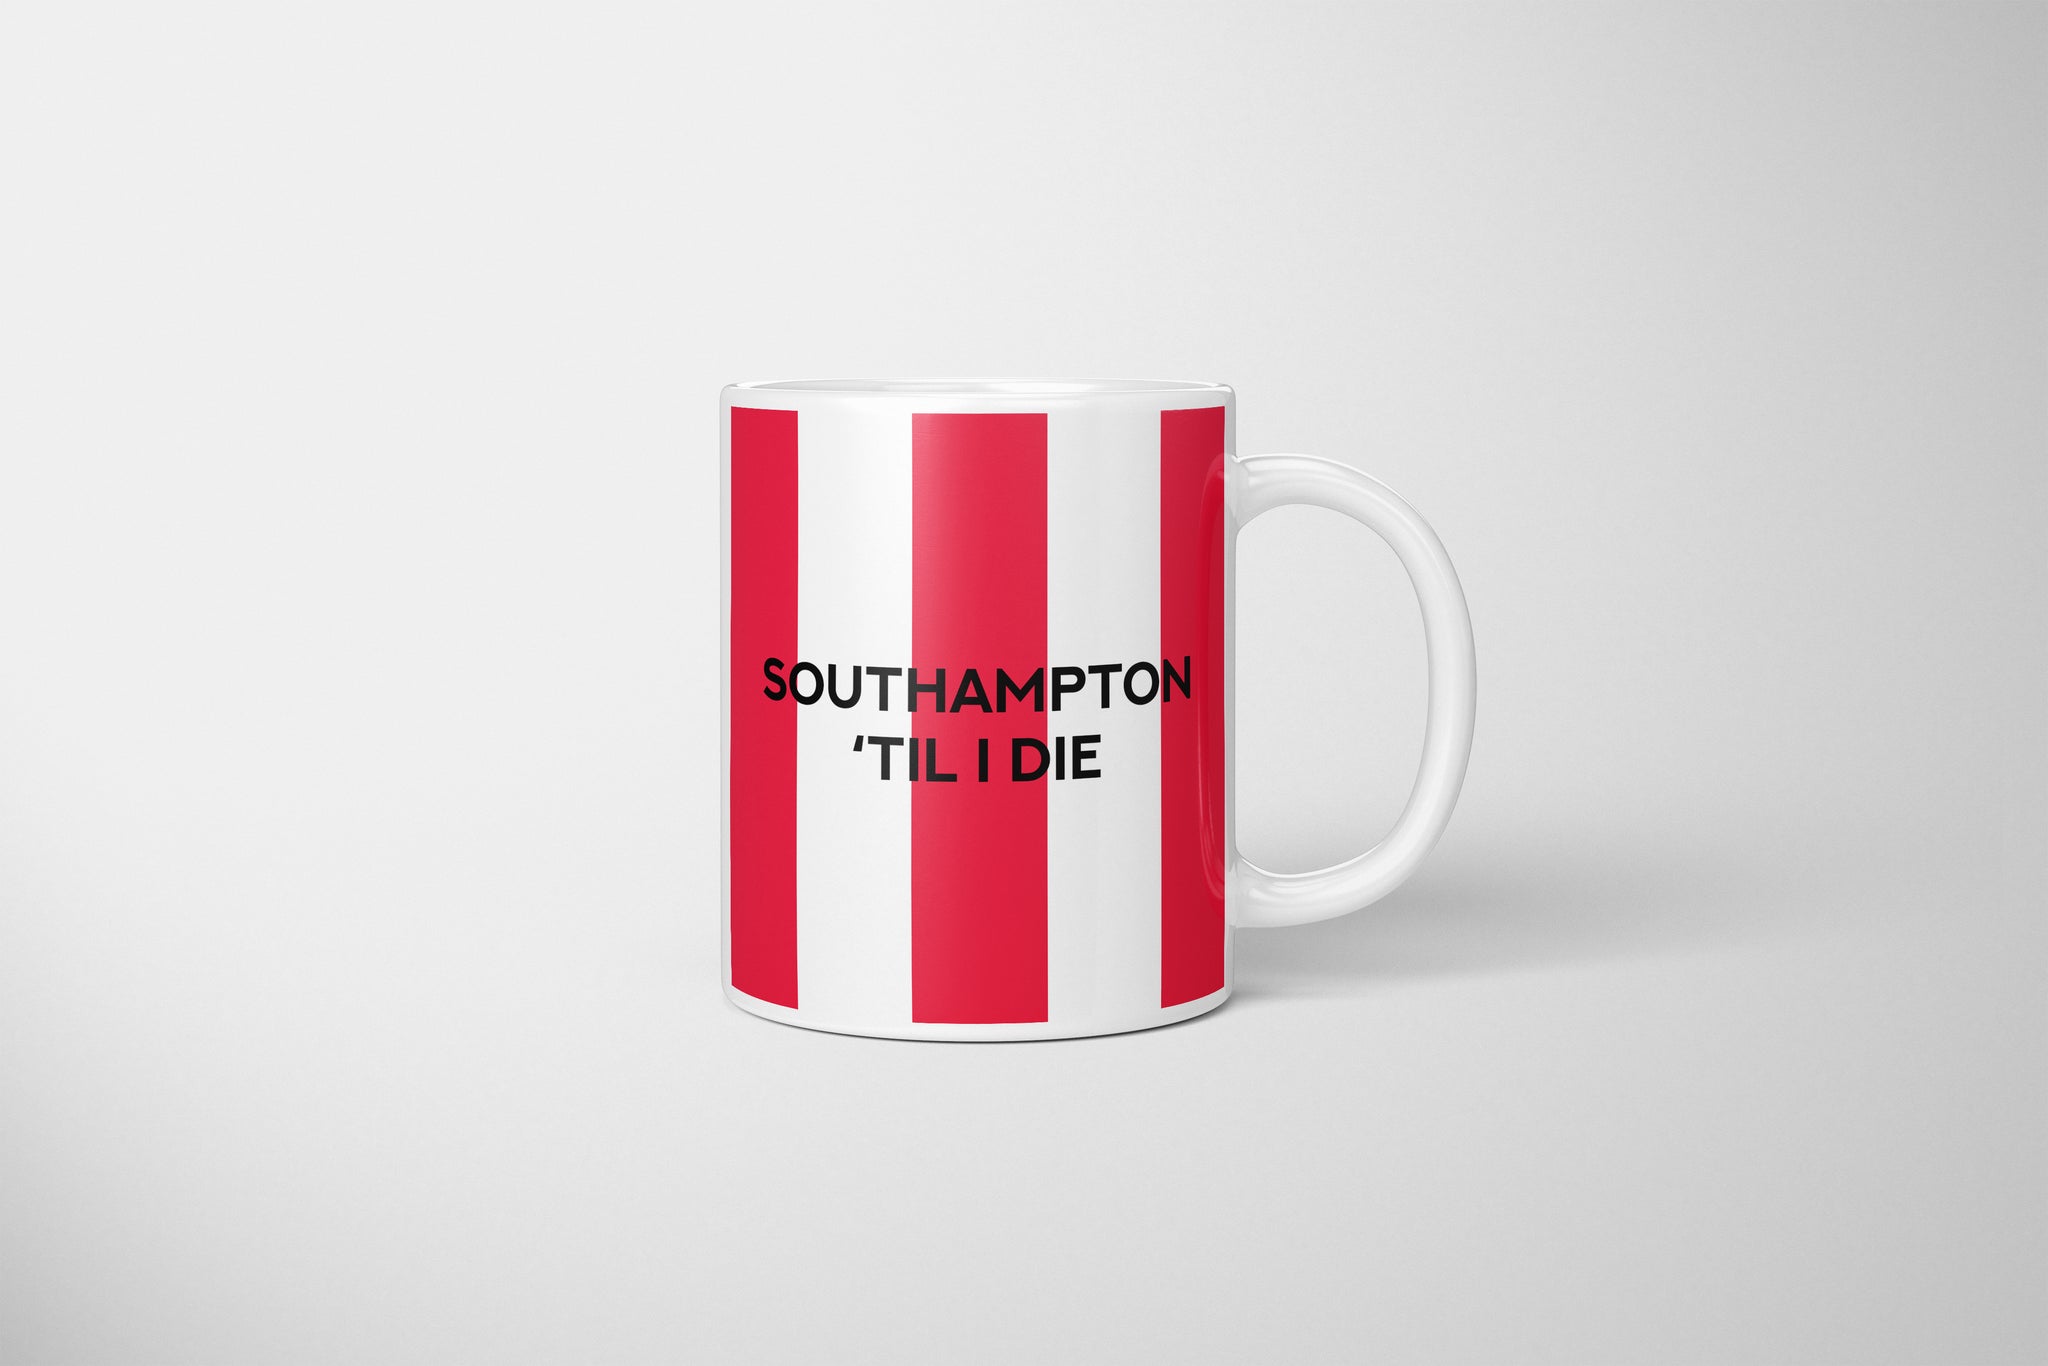 Southampton Fan Mug, Southampton Fan Mug, Southampton FC Mug, Southampton Football Fan Gift, Southampton Swear Mug, Gift For Southampton Fan, The Saints Mug, Perfect Mug For Southampton Fan, Southampton Present, Southampton Football Fan Present